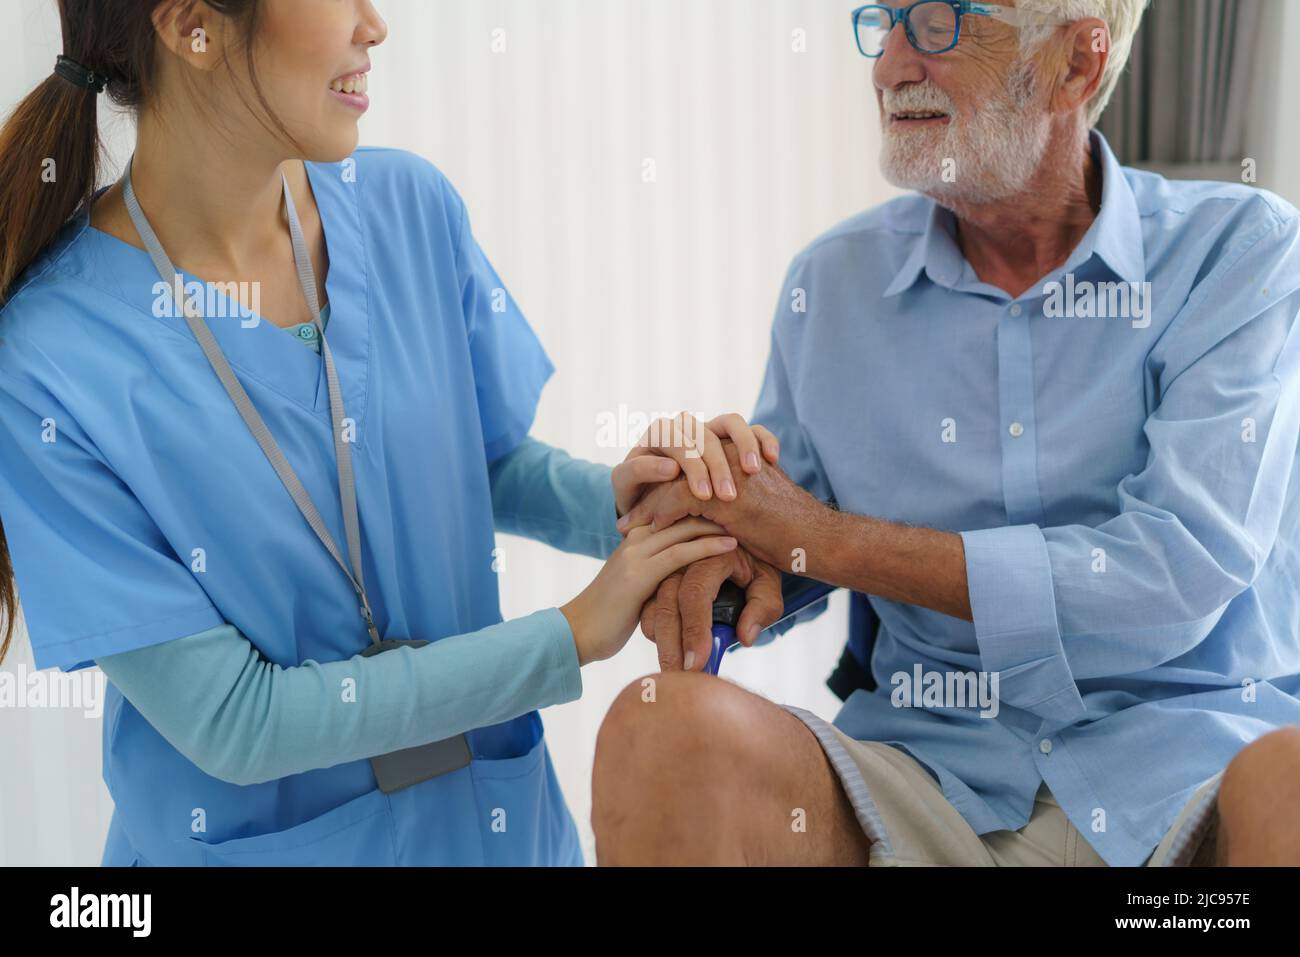 Enfermera asiática sentada en una cama de hospital junto a un hombre mayor ayudando a las manos, cuidando. Atención al paciente de edad avanzada y estilo de vida de salud, concepto médico. Foto de stock